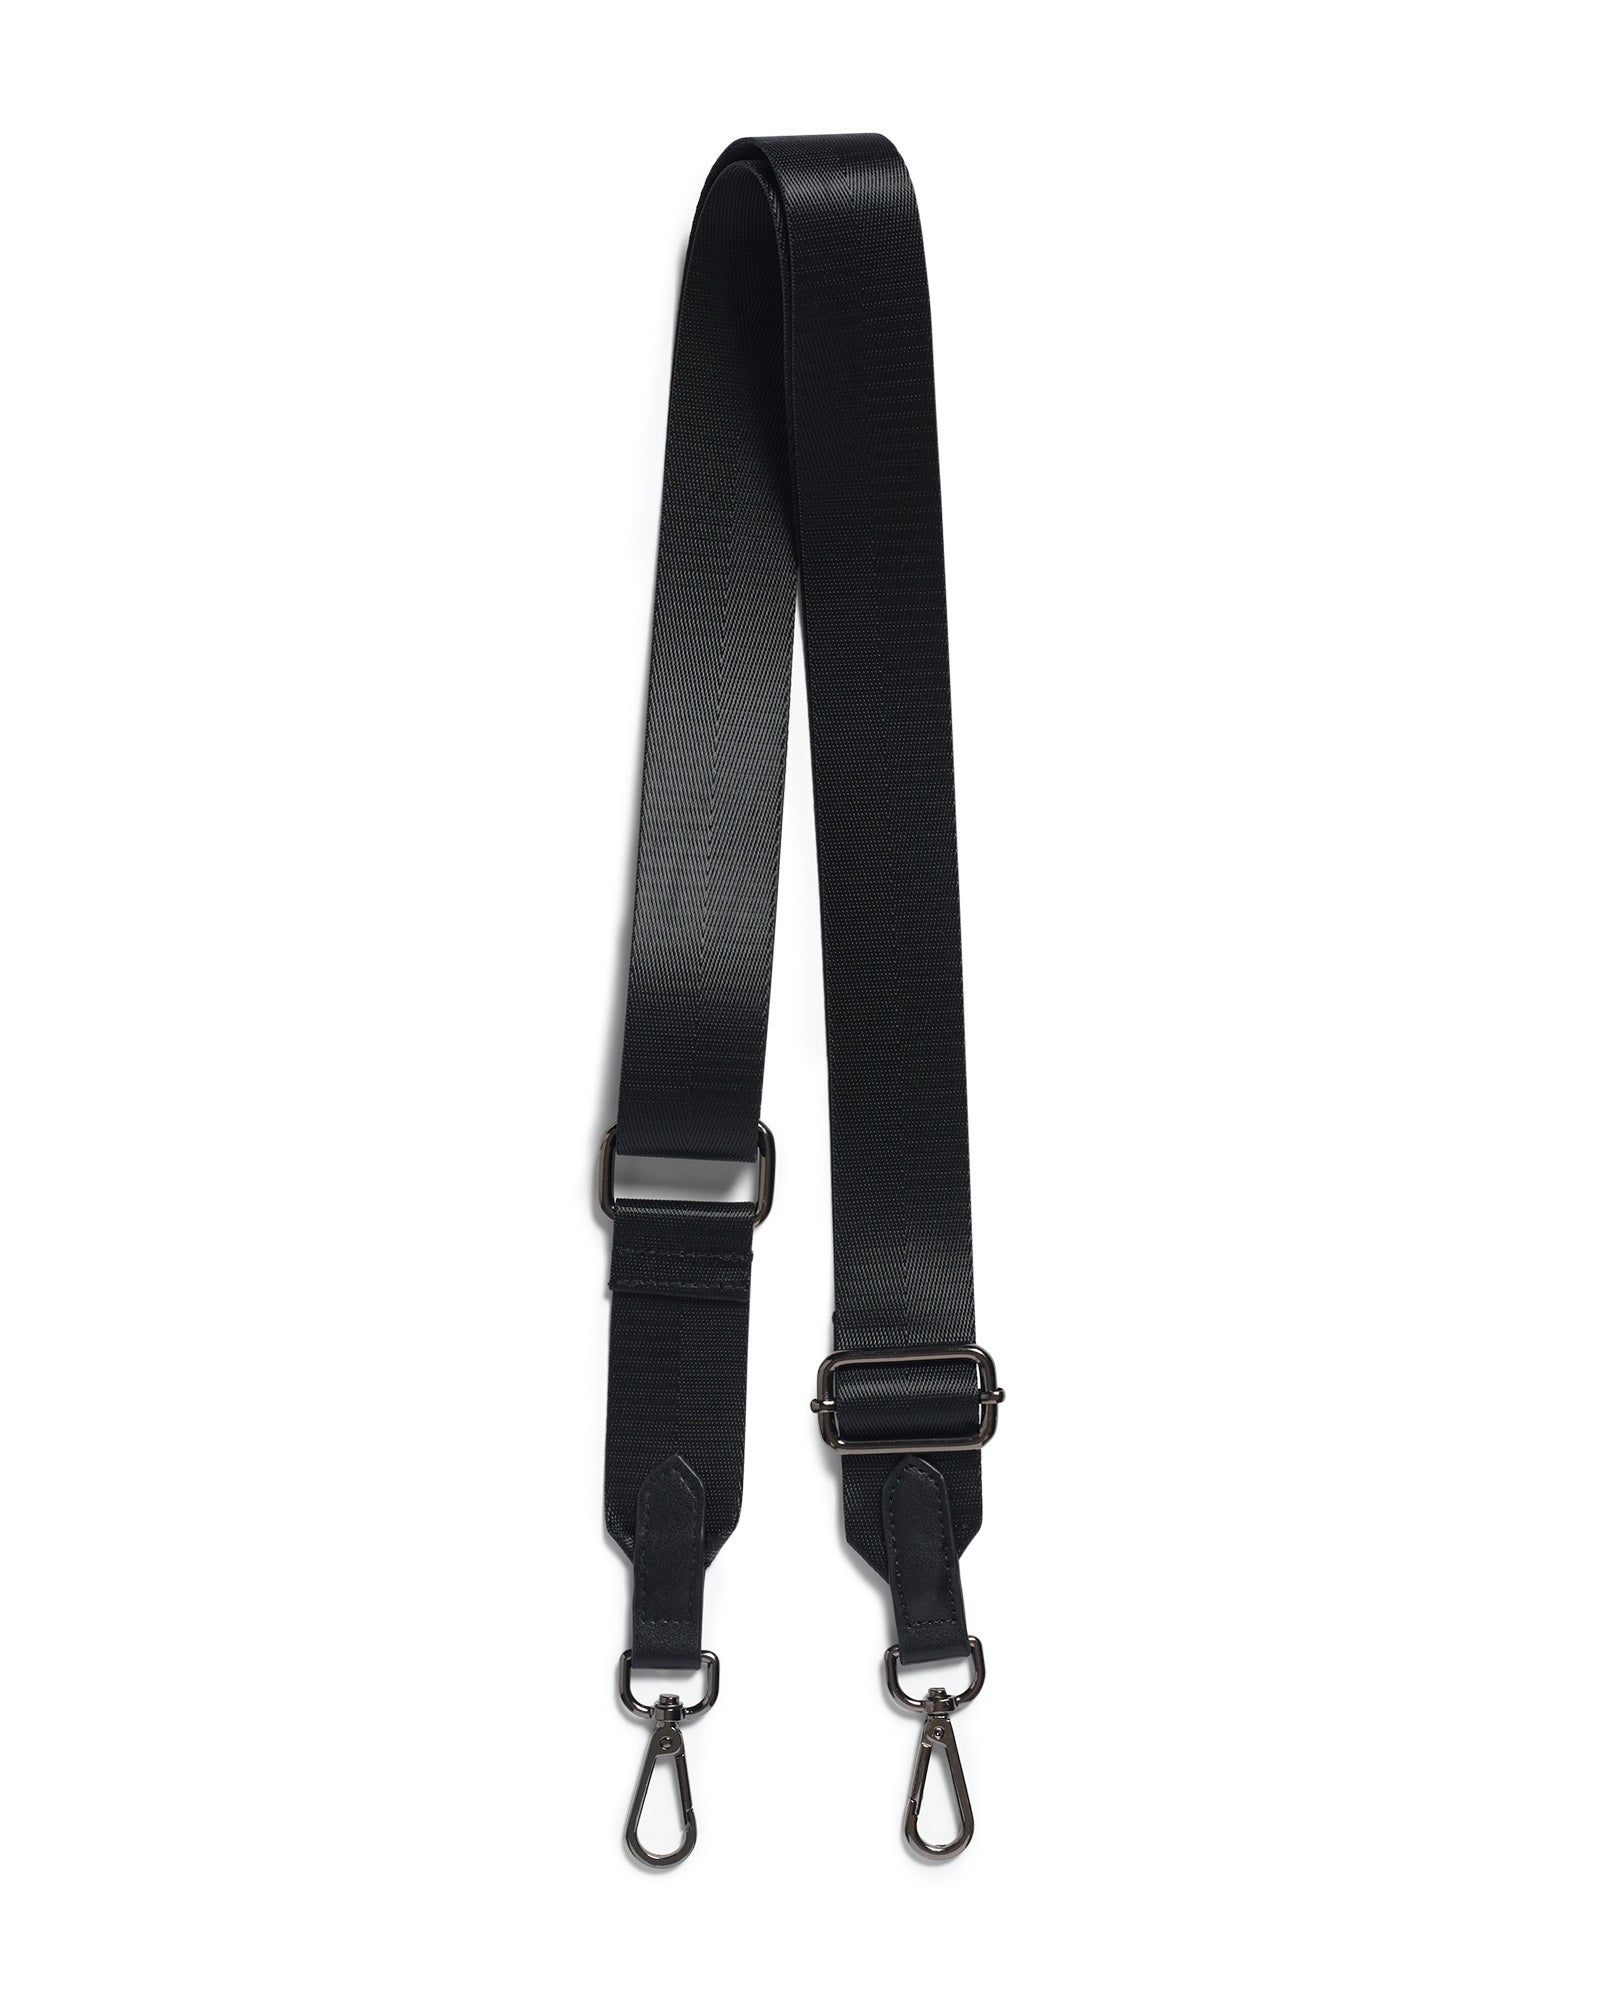 Adjustable Leather Strap - Black